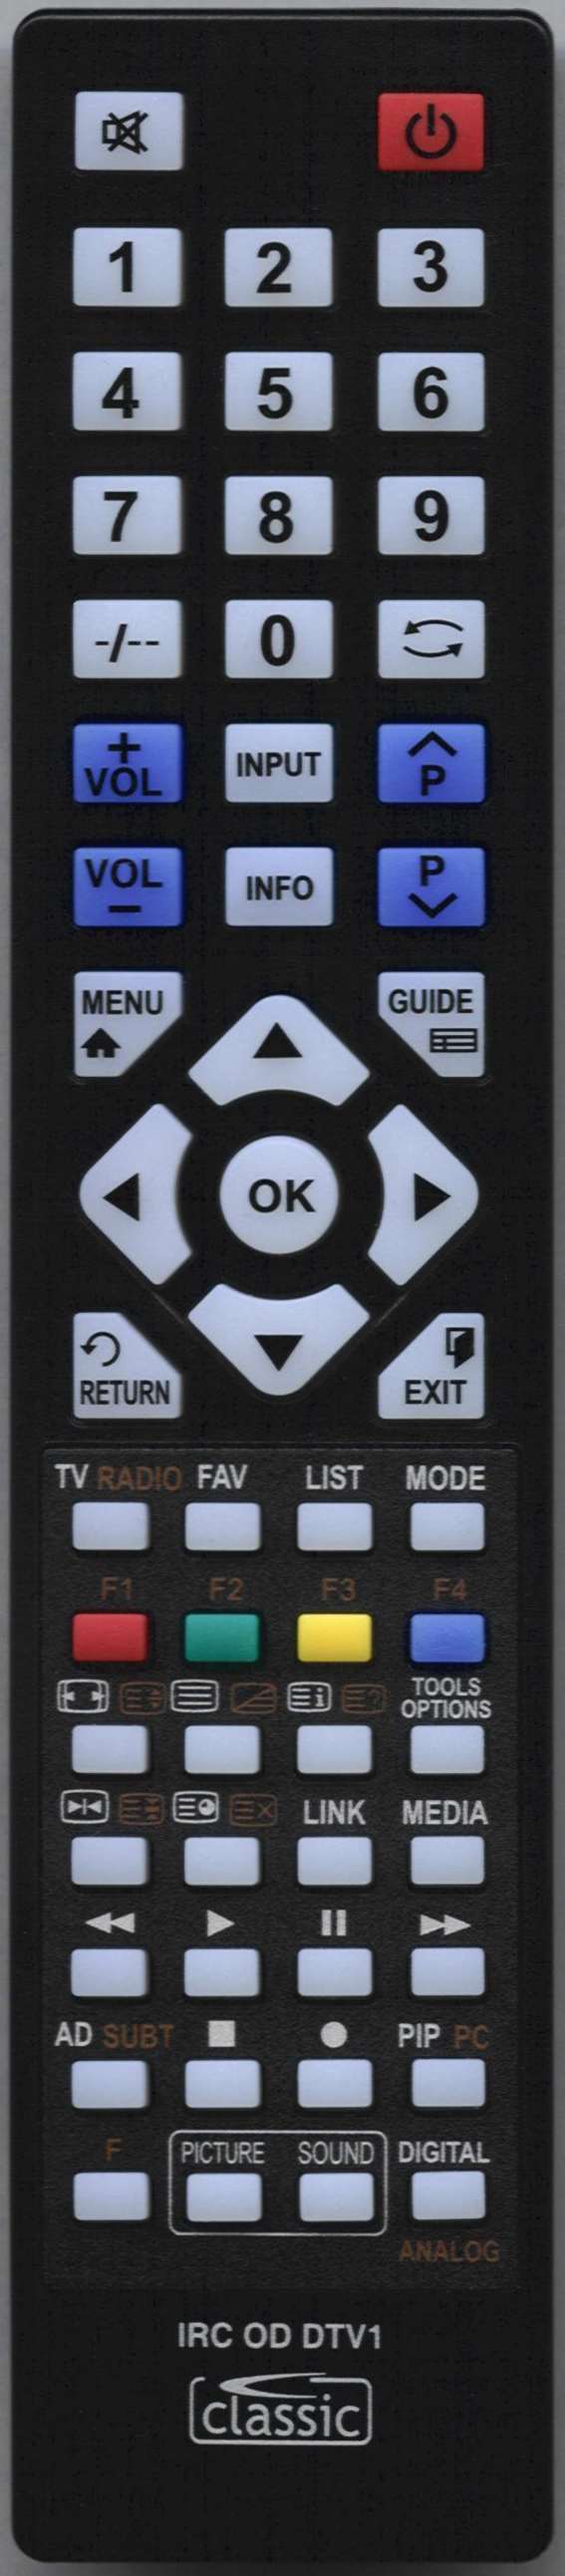 Beko 14272 DS Remote Control